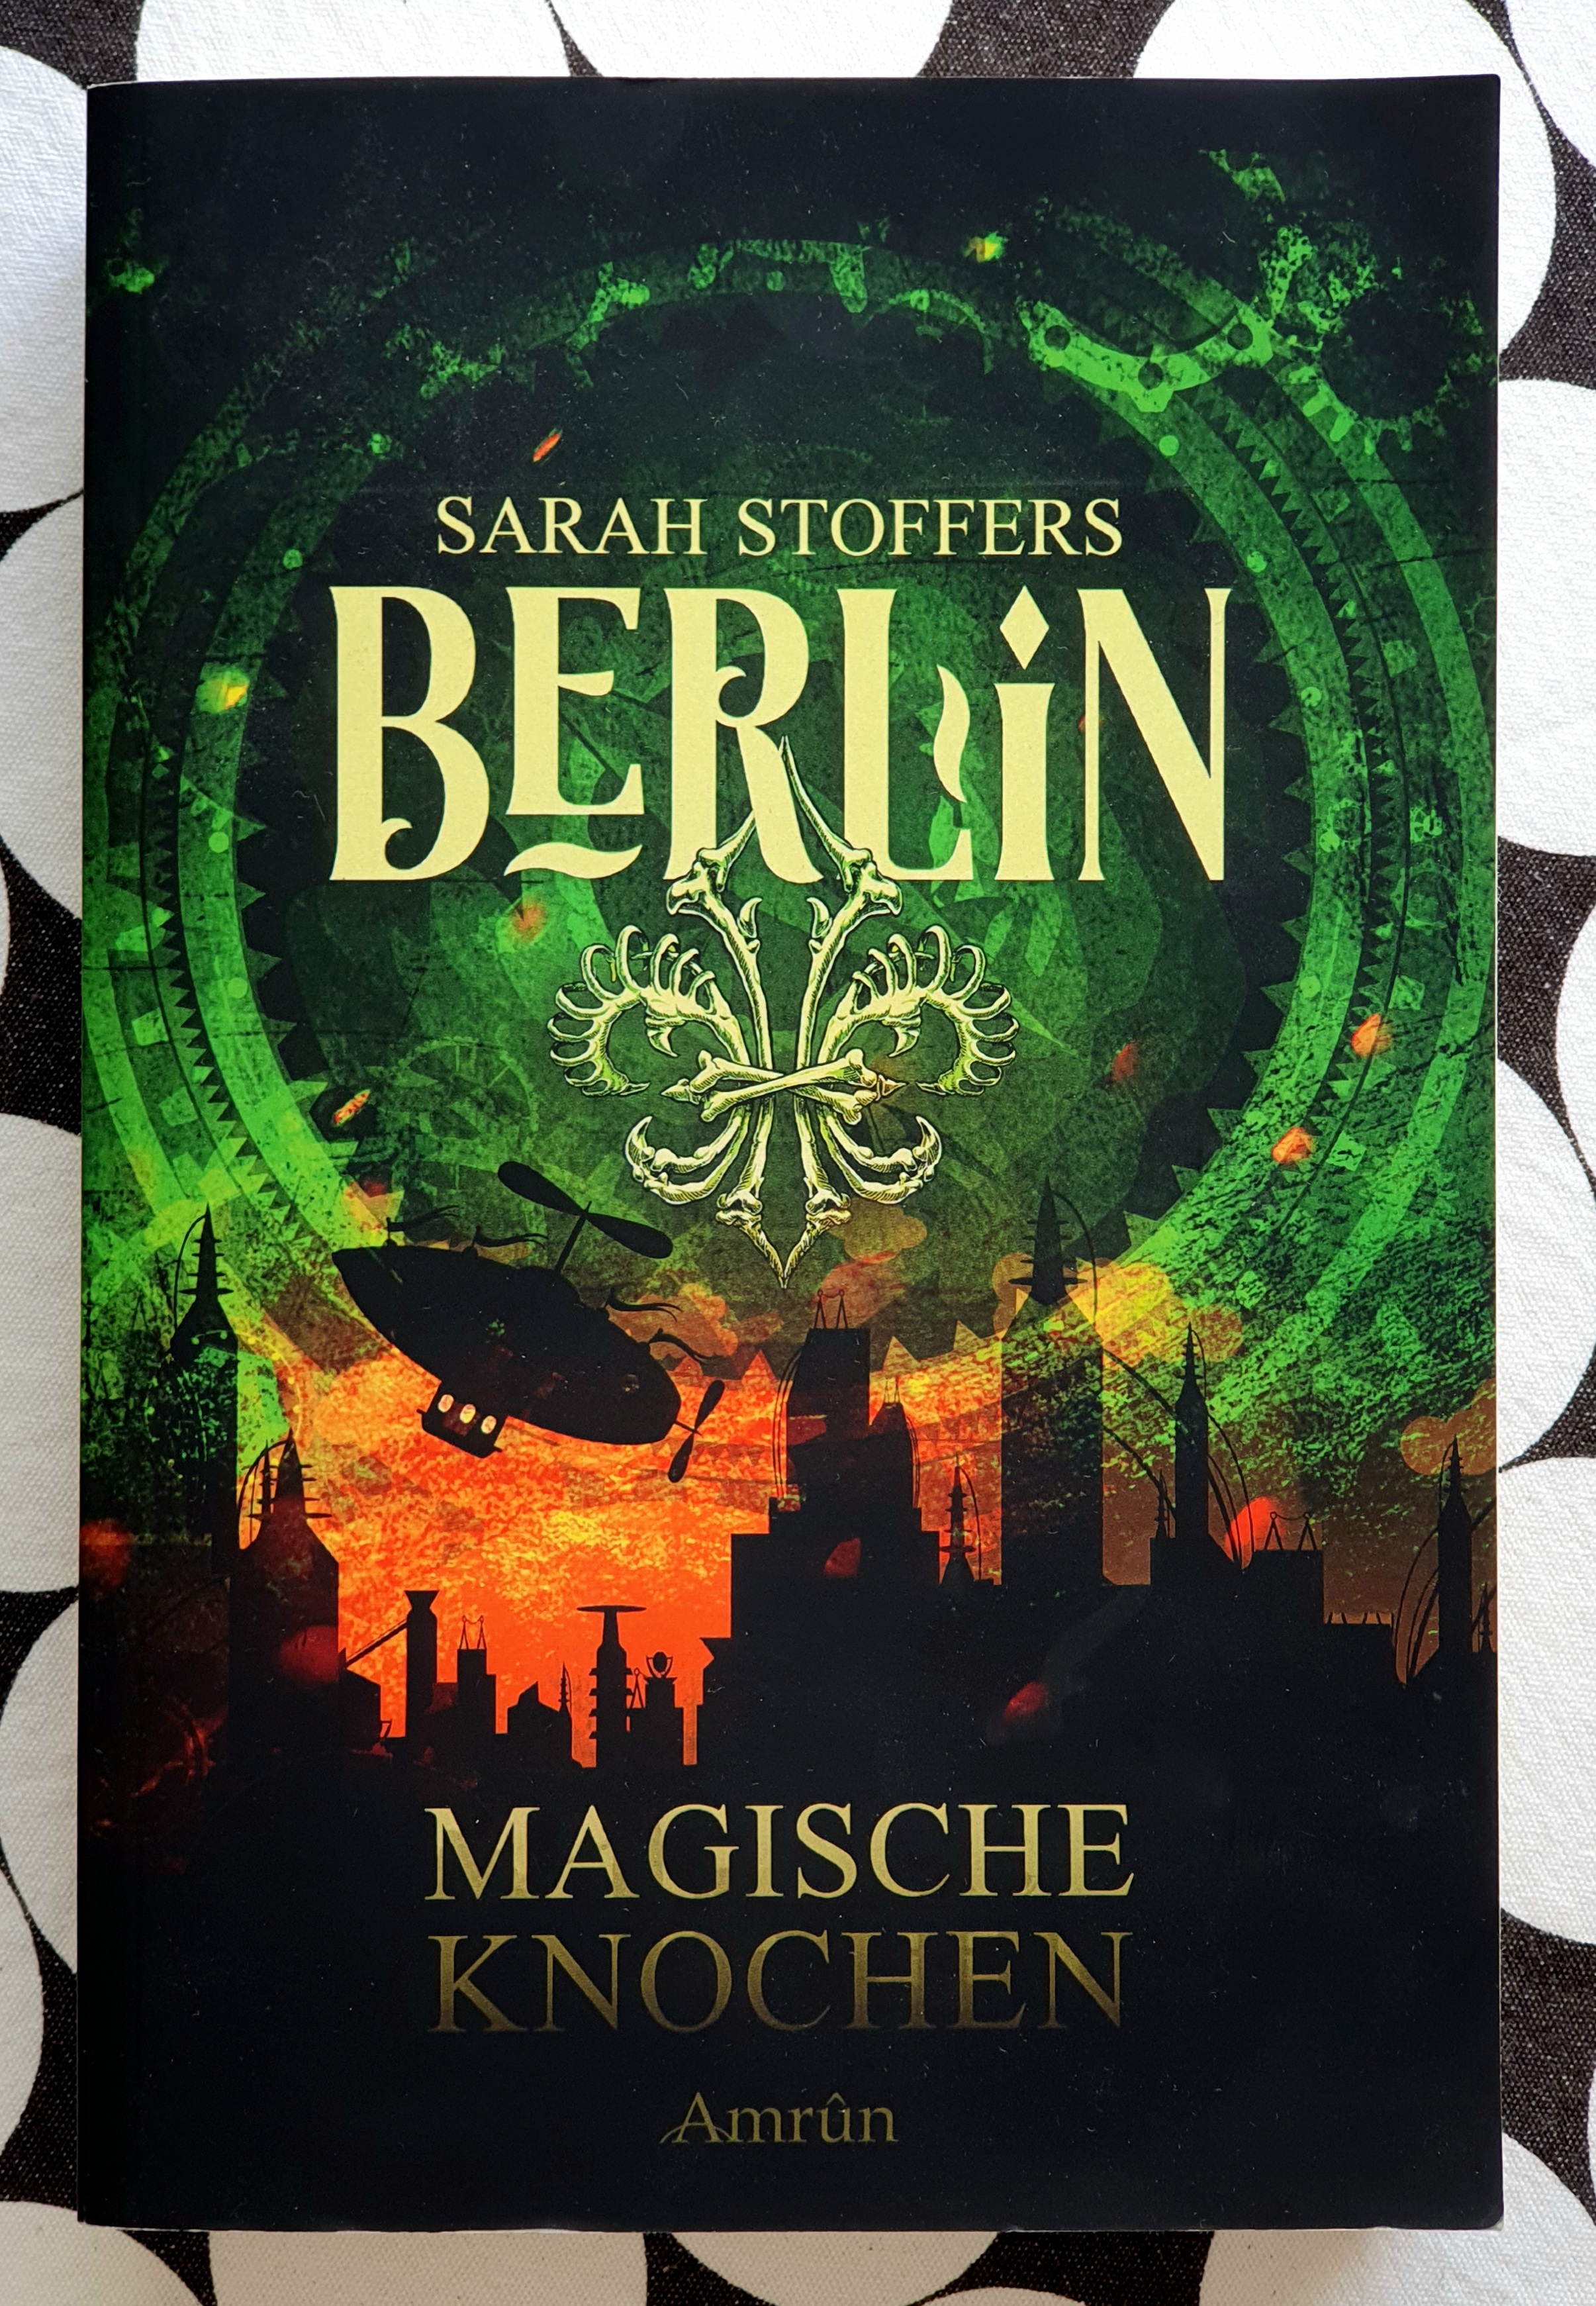 Foto des Einbandes von "Berlin - Magische Knochen. Unten eine schwarze Skyline einer Stadt mit vielen Türmen, darauf der Titel "Magische Knochen" und der Verlag Amrun. Das Wort Berlin und der Name Sarah Stoffers stehen vor dem grün schimmernden Himmel an dem ein Zeppelin fliegt.